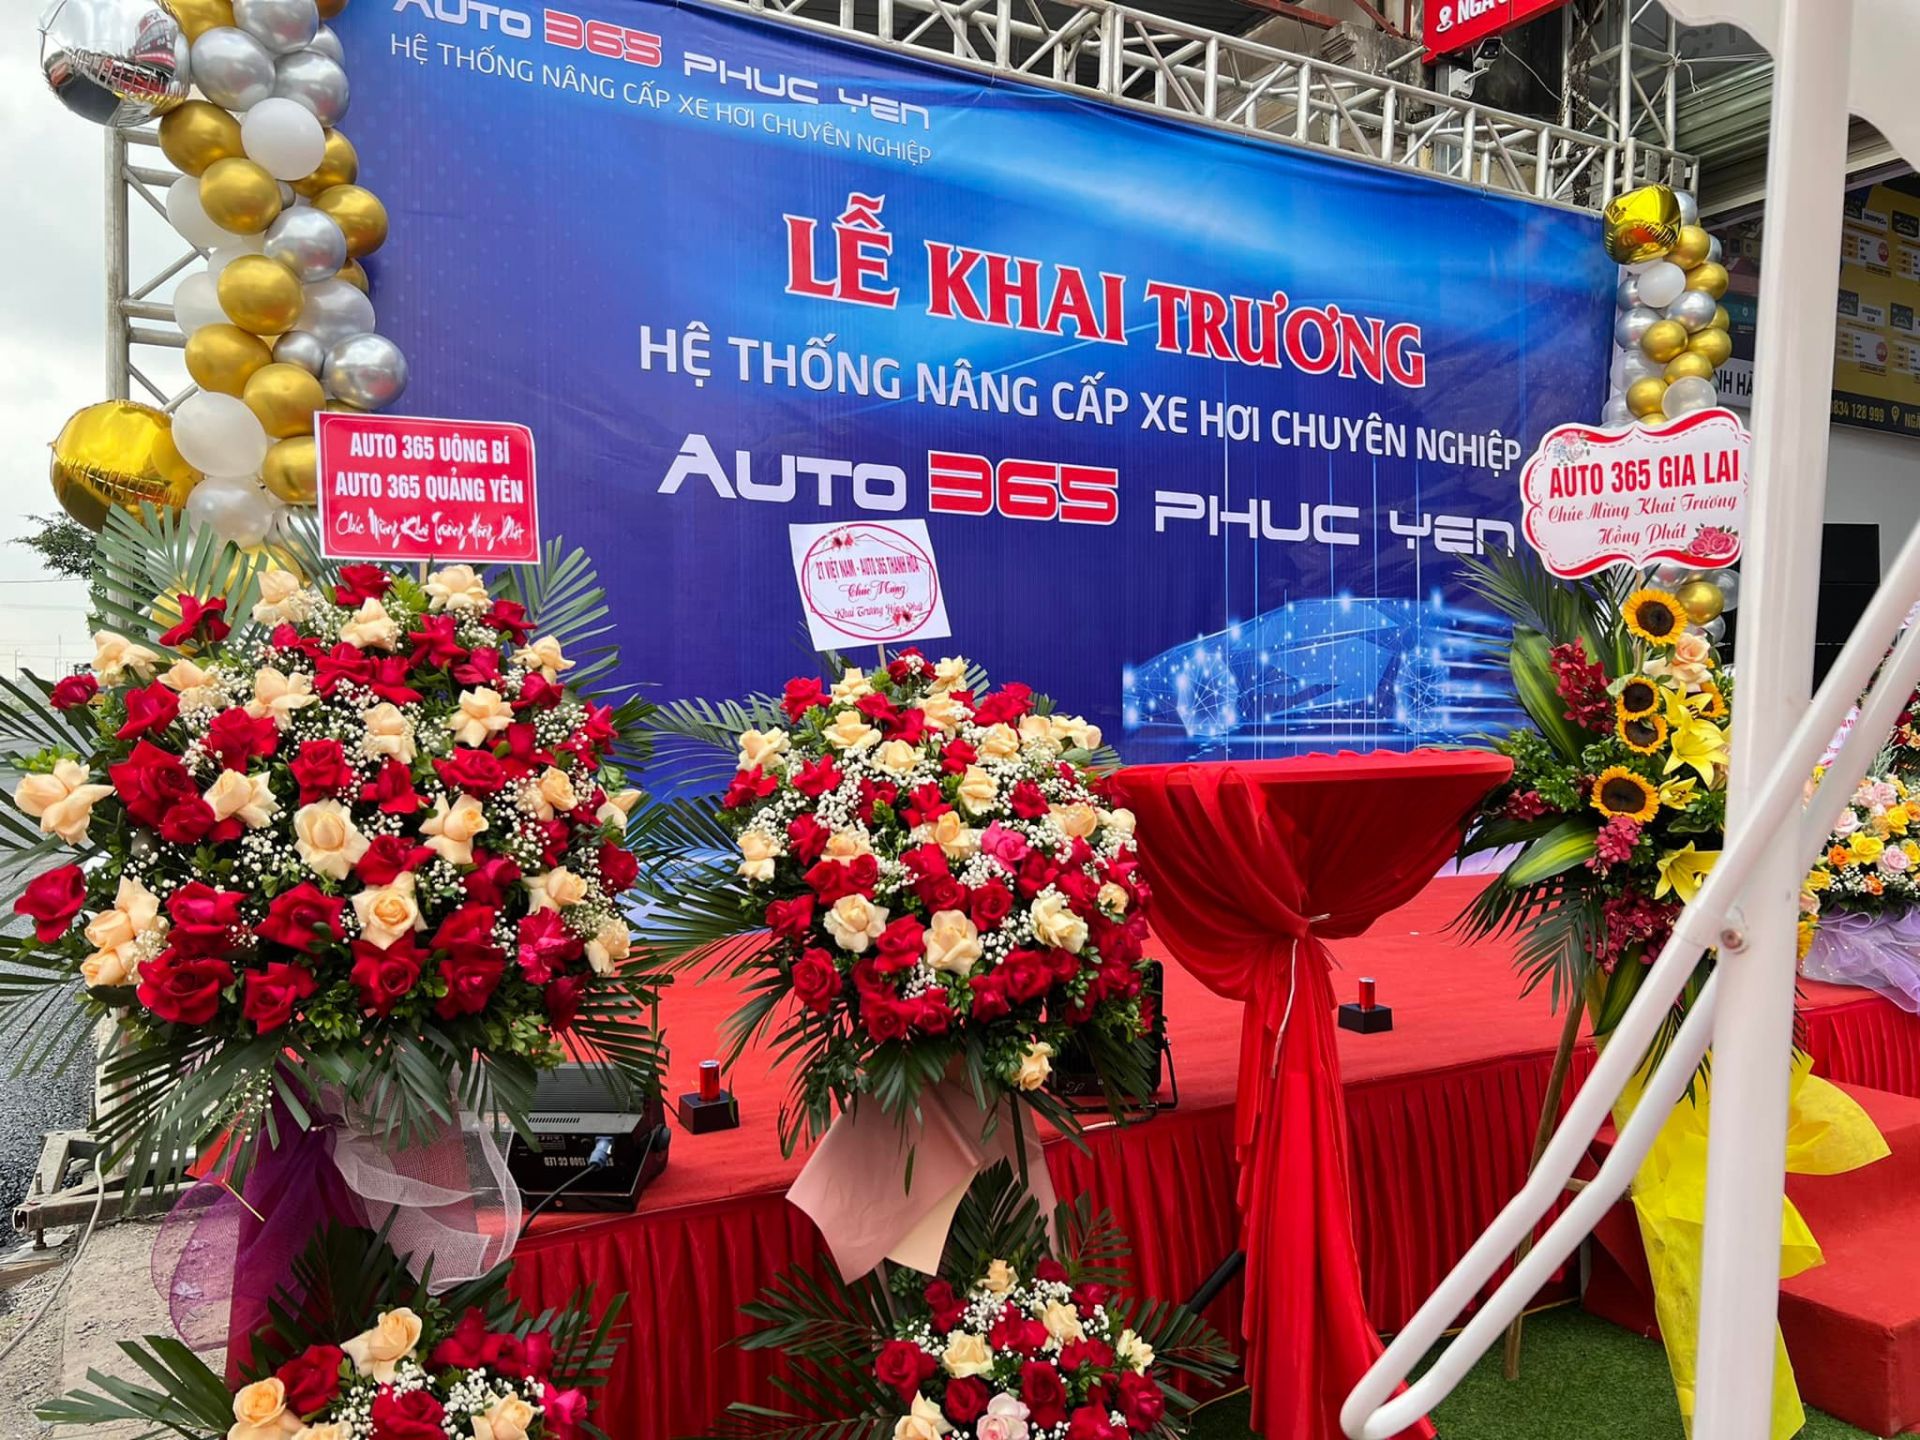 Auto365 Phúc Yên chính thức khai trương tại Ngã 3 Tiền Châu